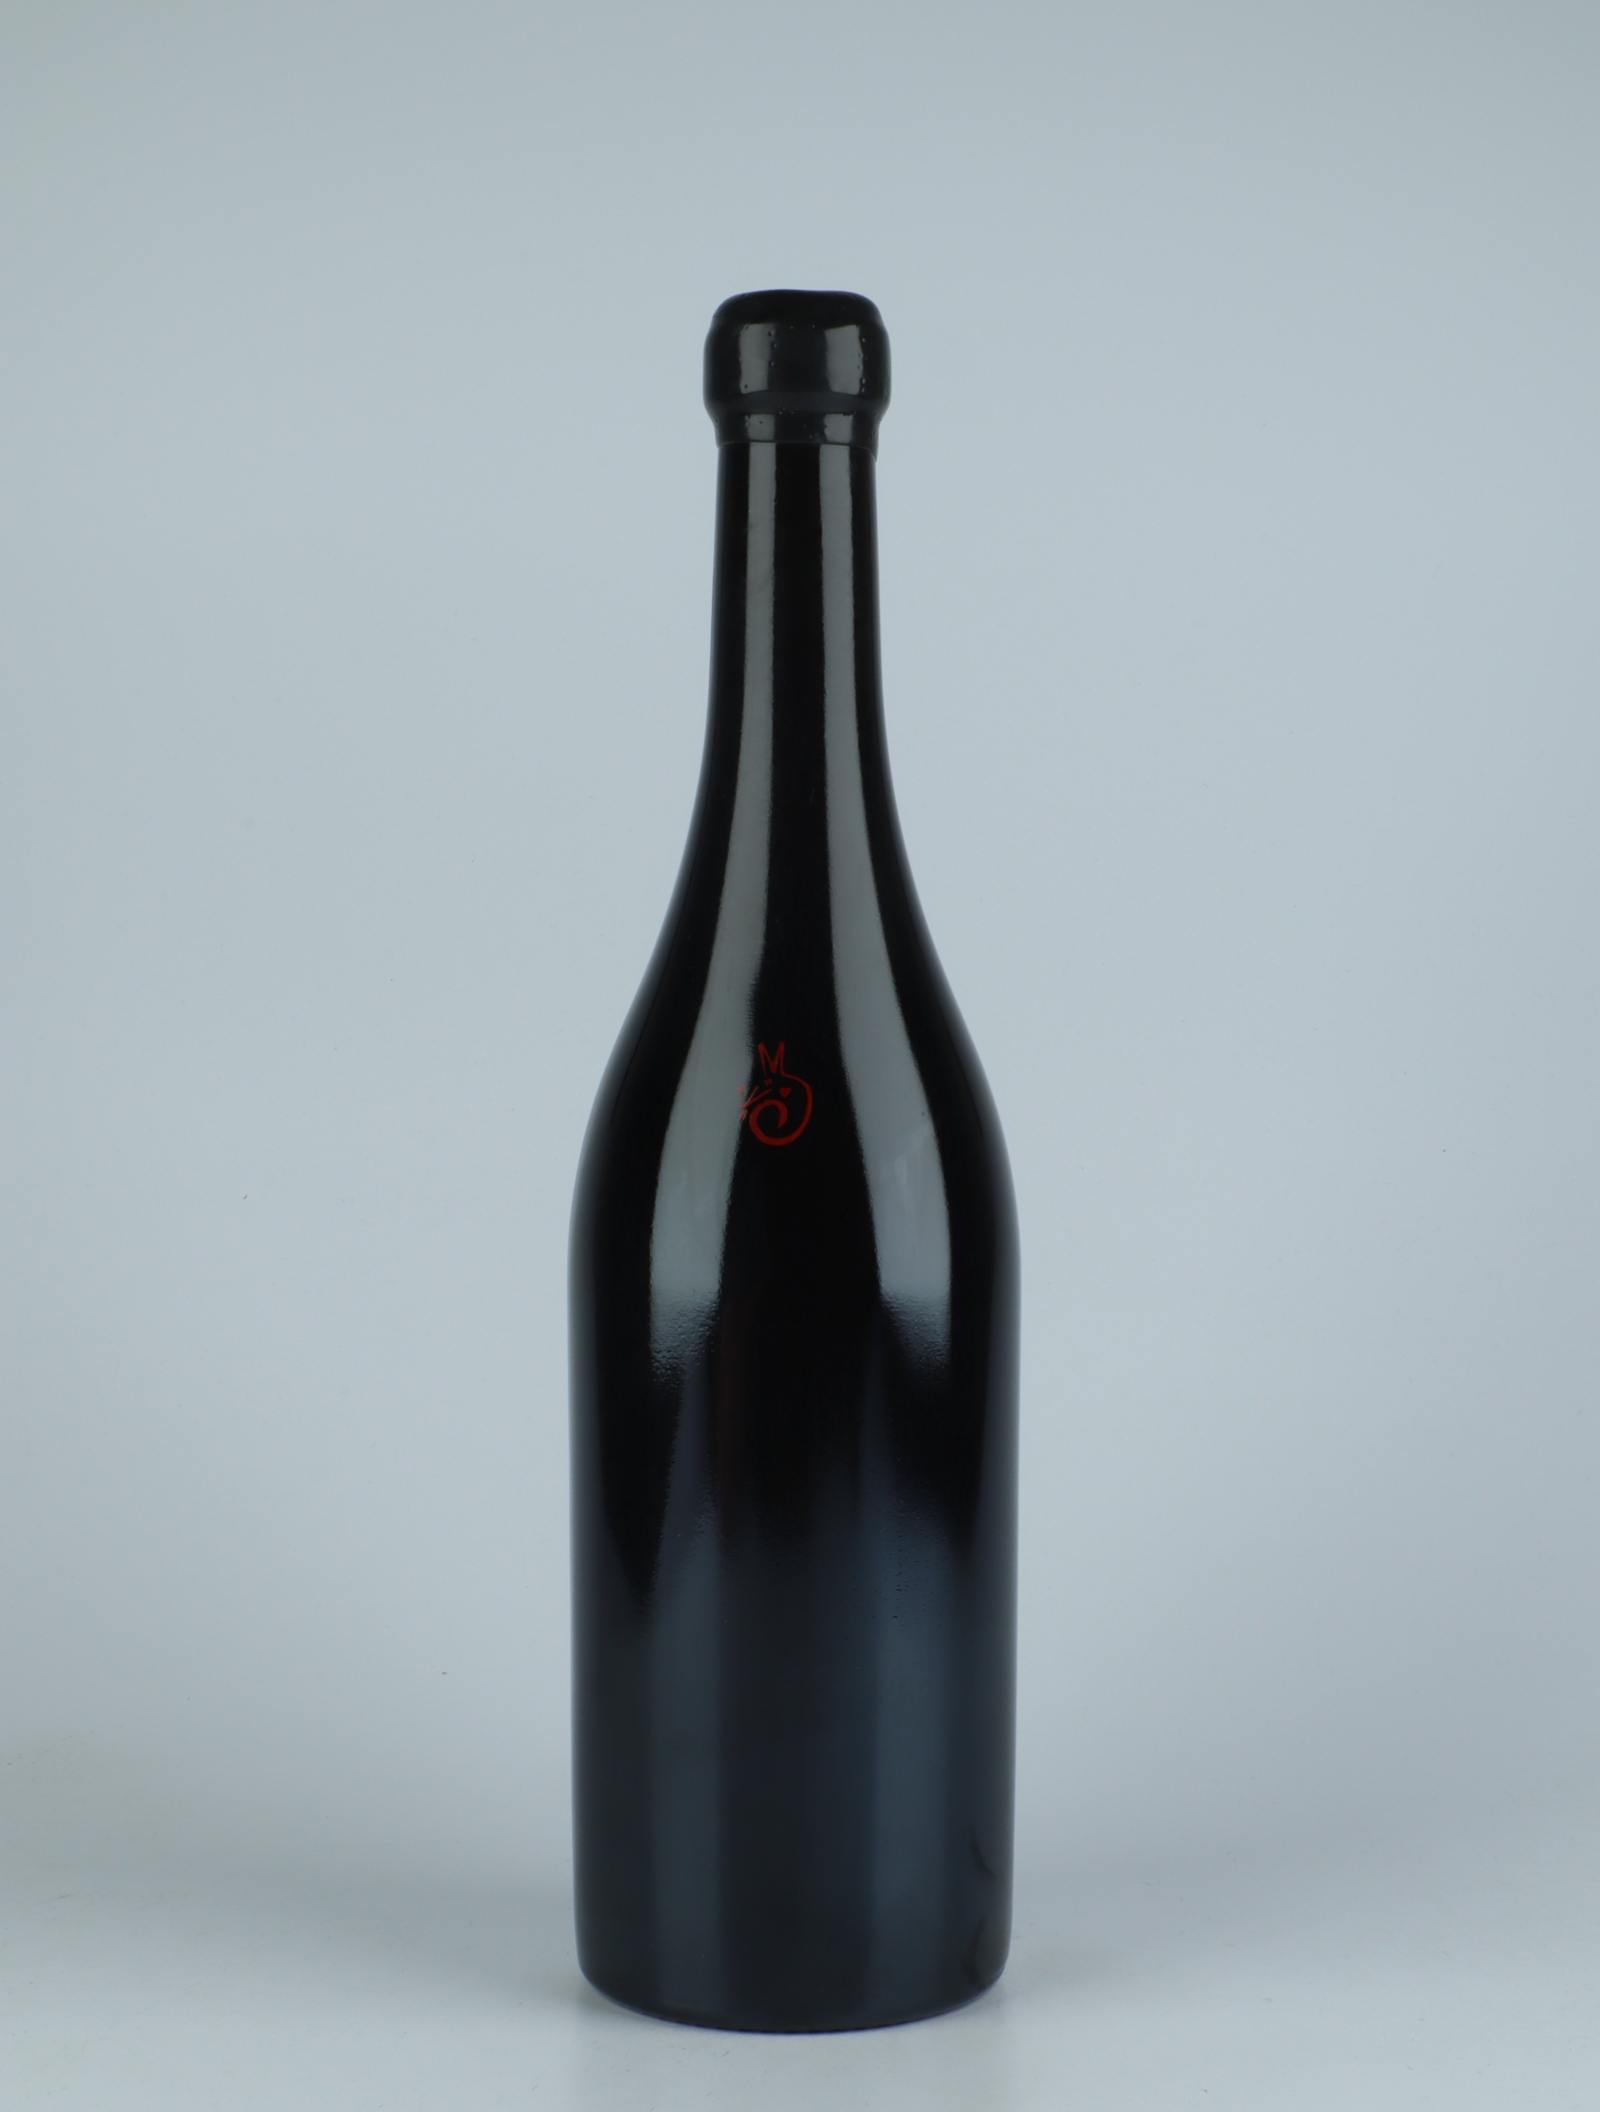 A bottle 2017 Vi Negre Red wine from Els Jelipins, Penedès in Spain